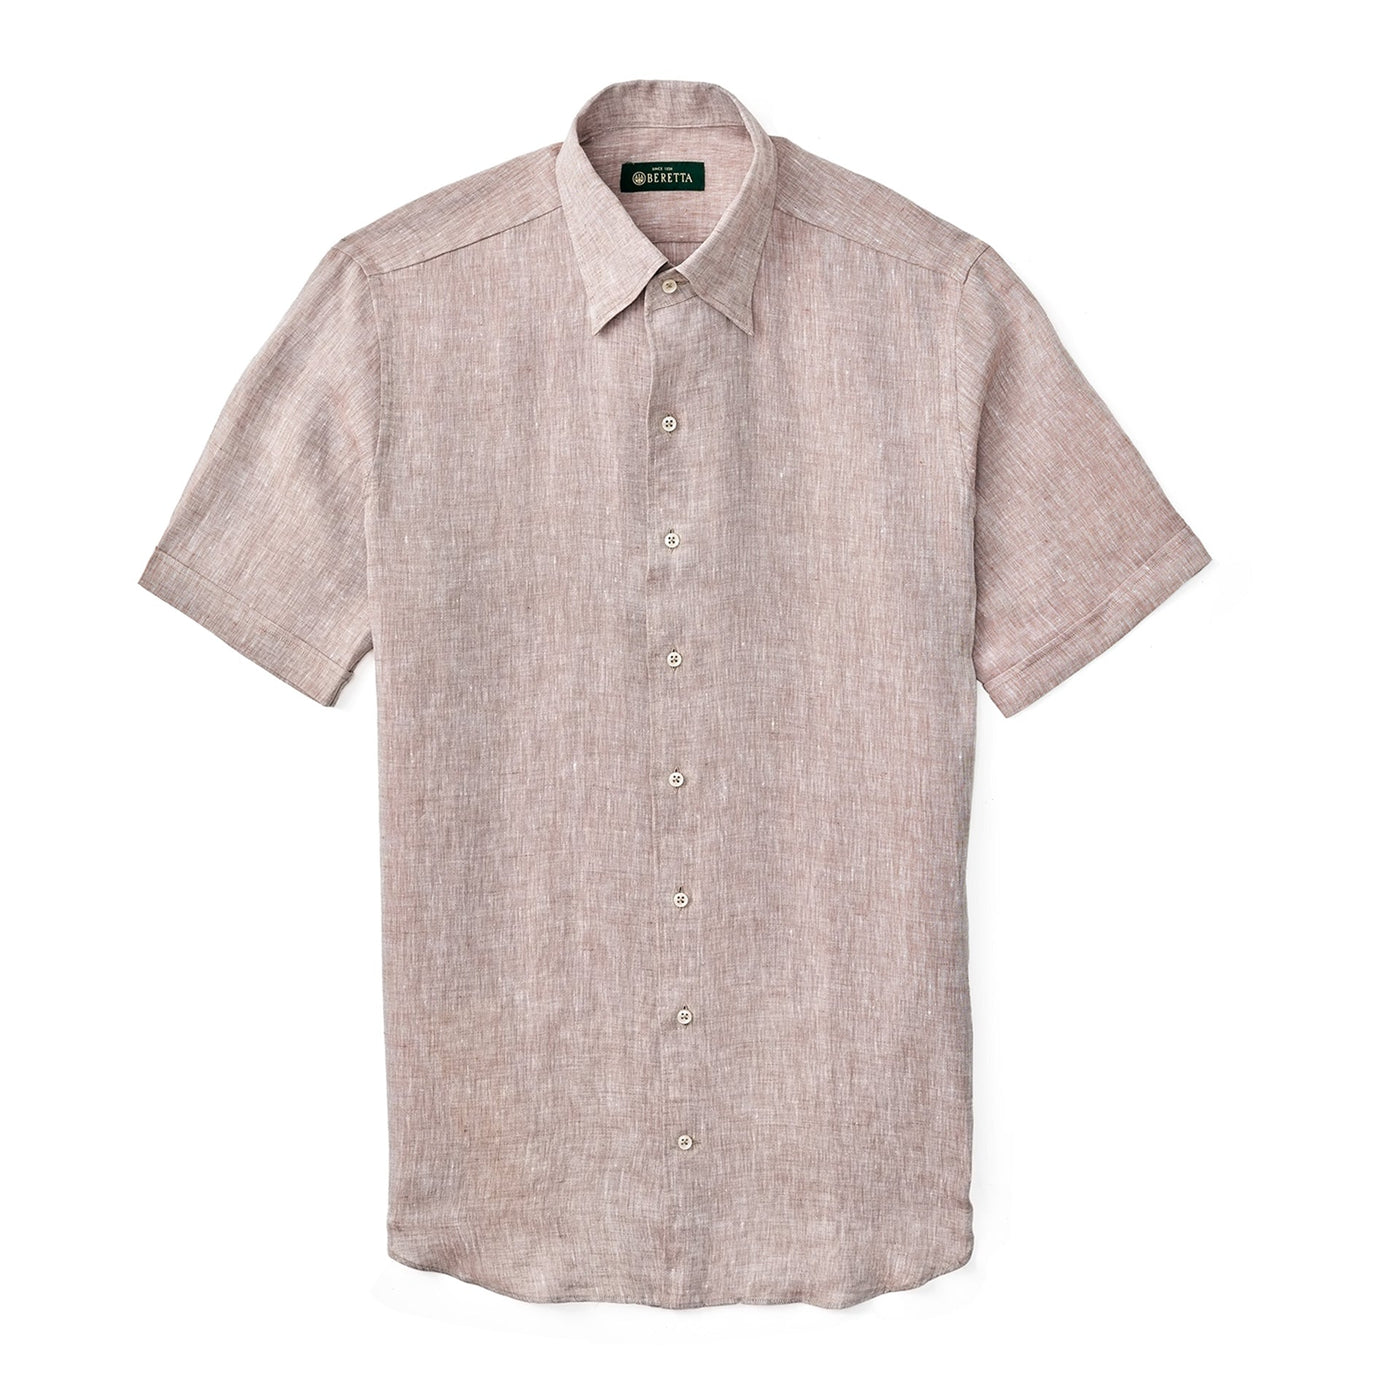 Classic Short Sleeve Linen Shirt - Tan